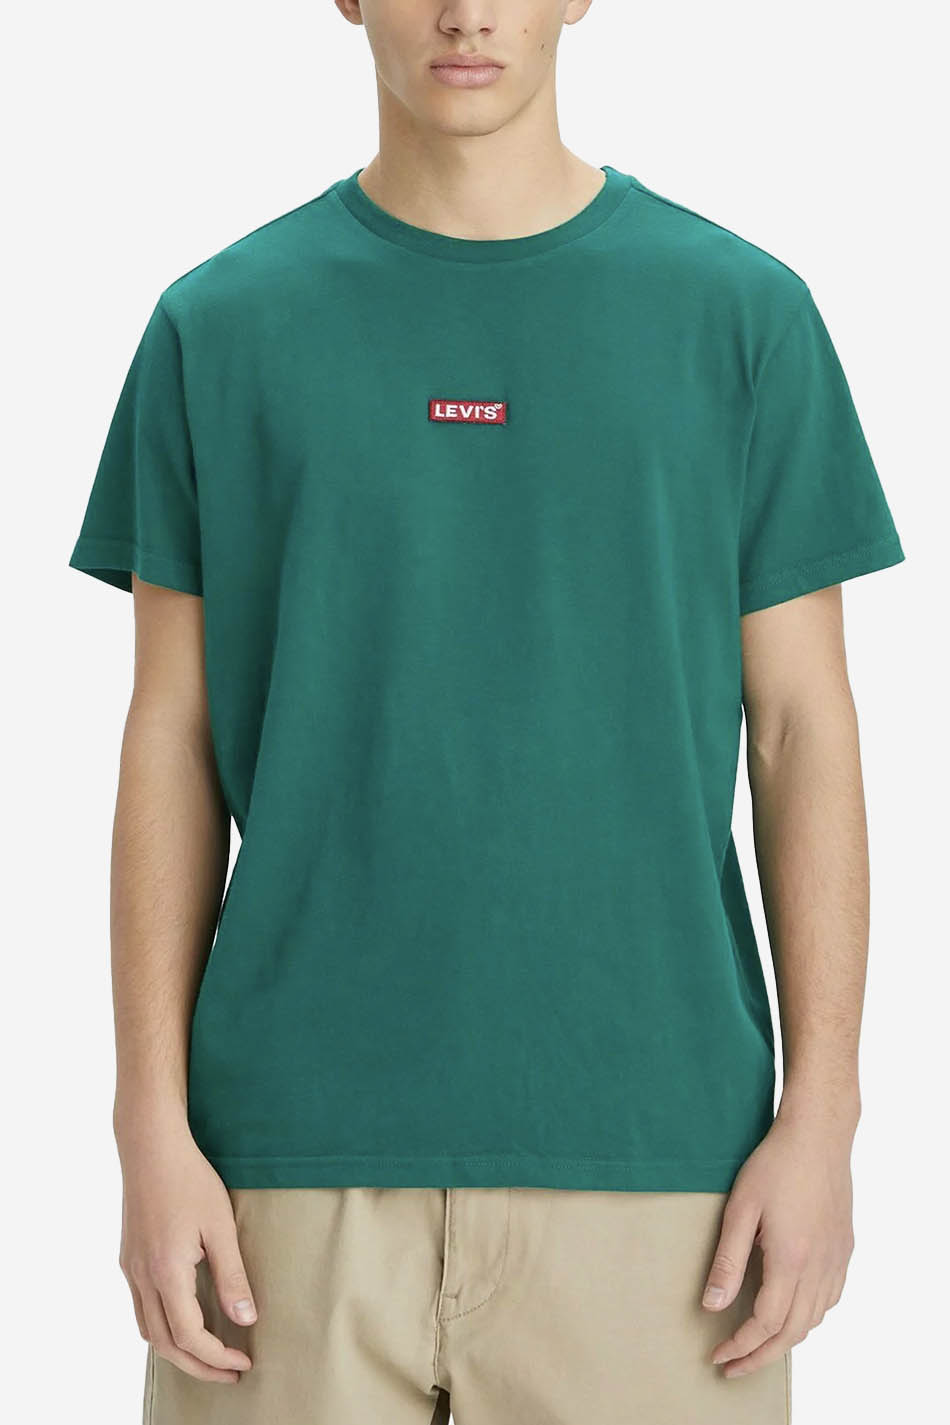 Camiseta Levis Verde